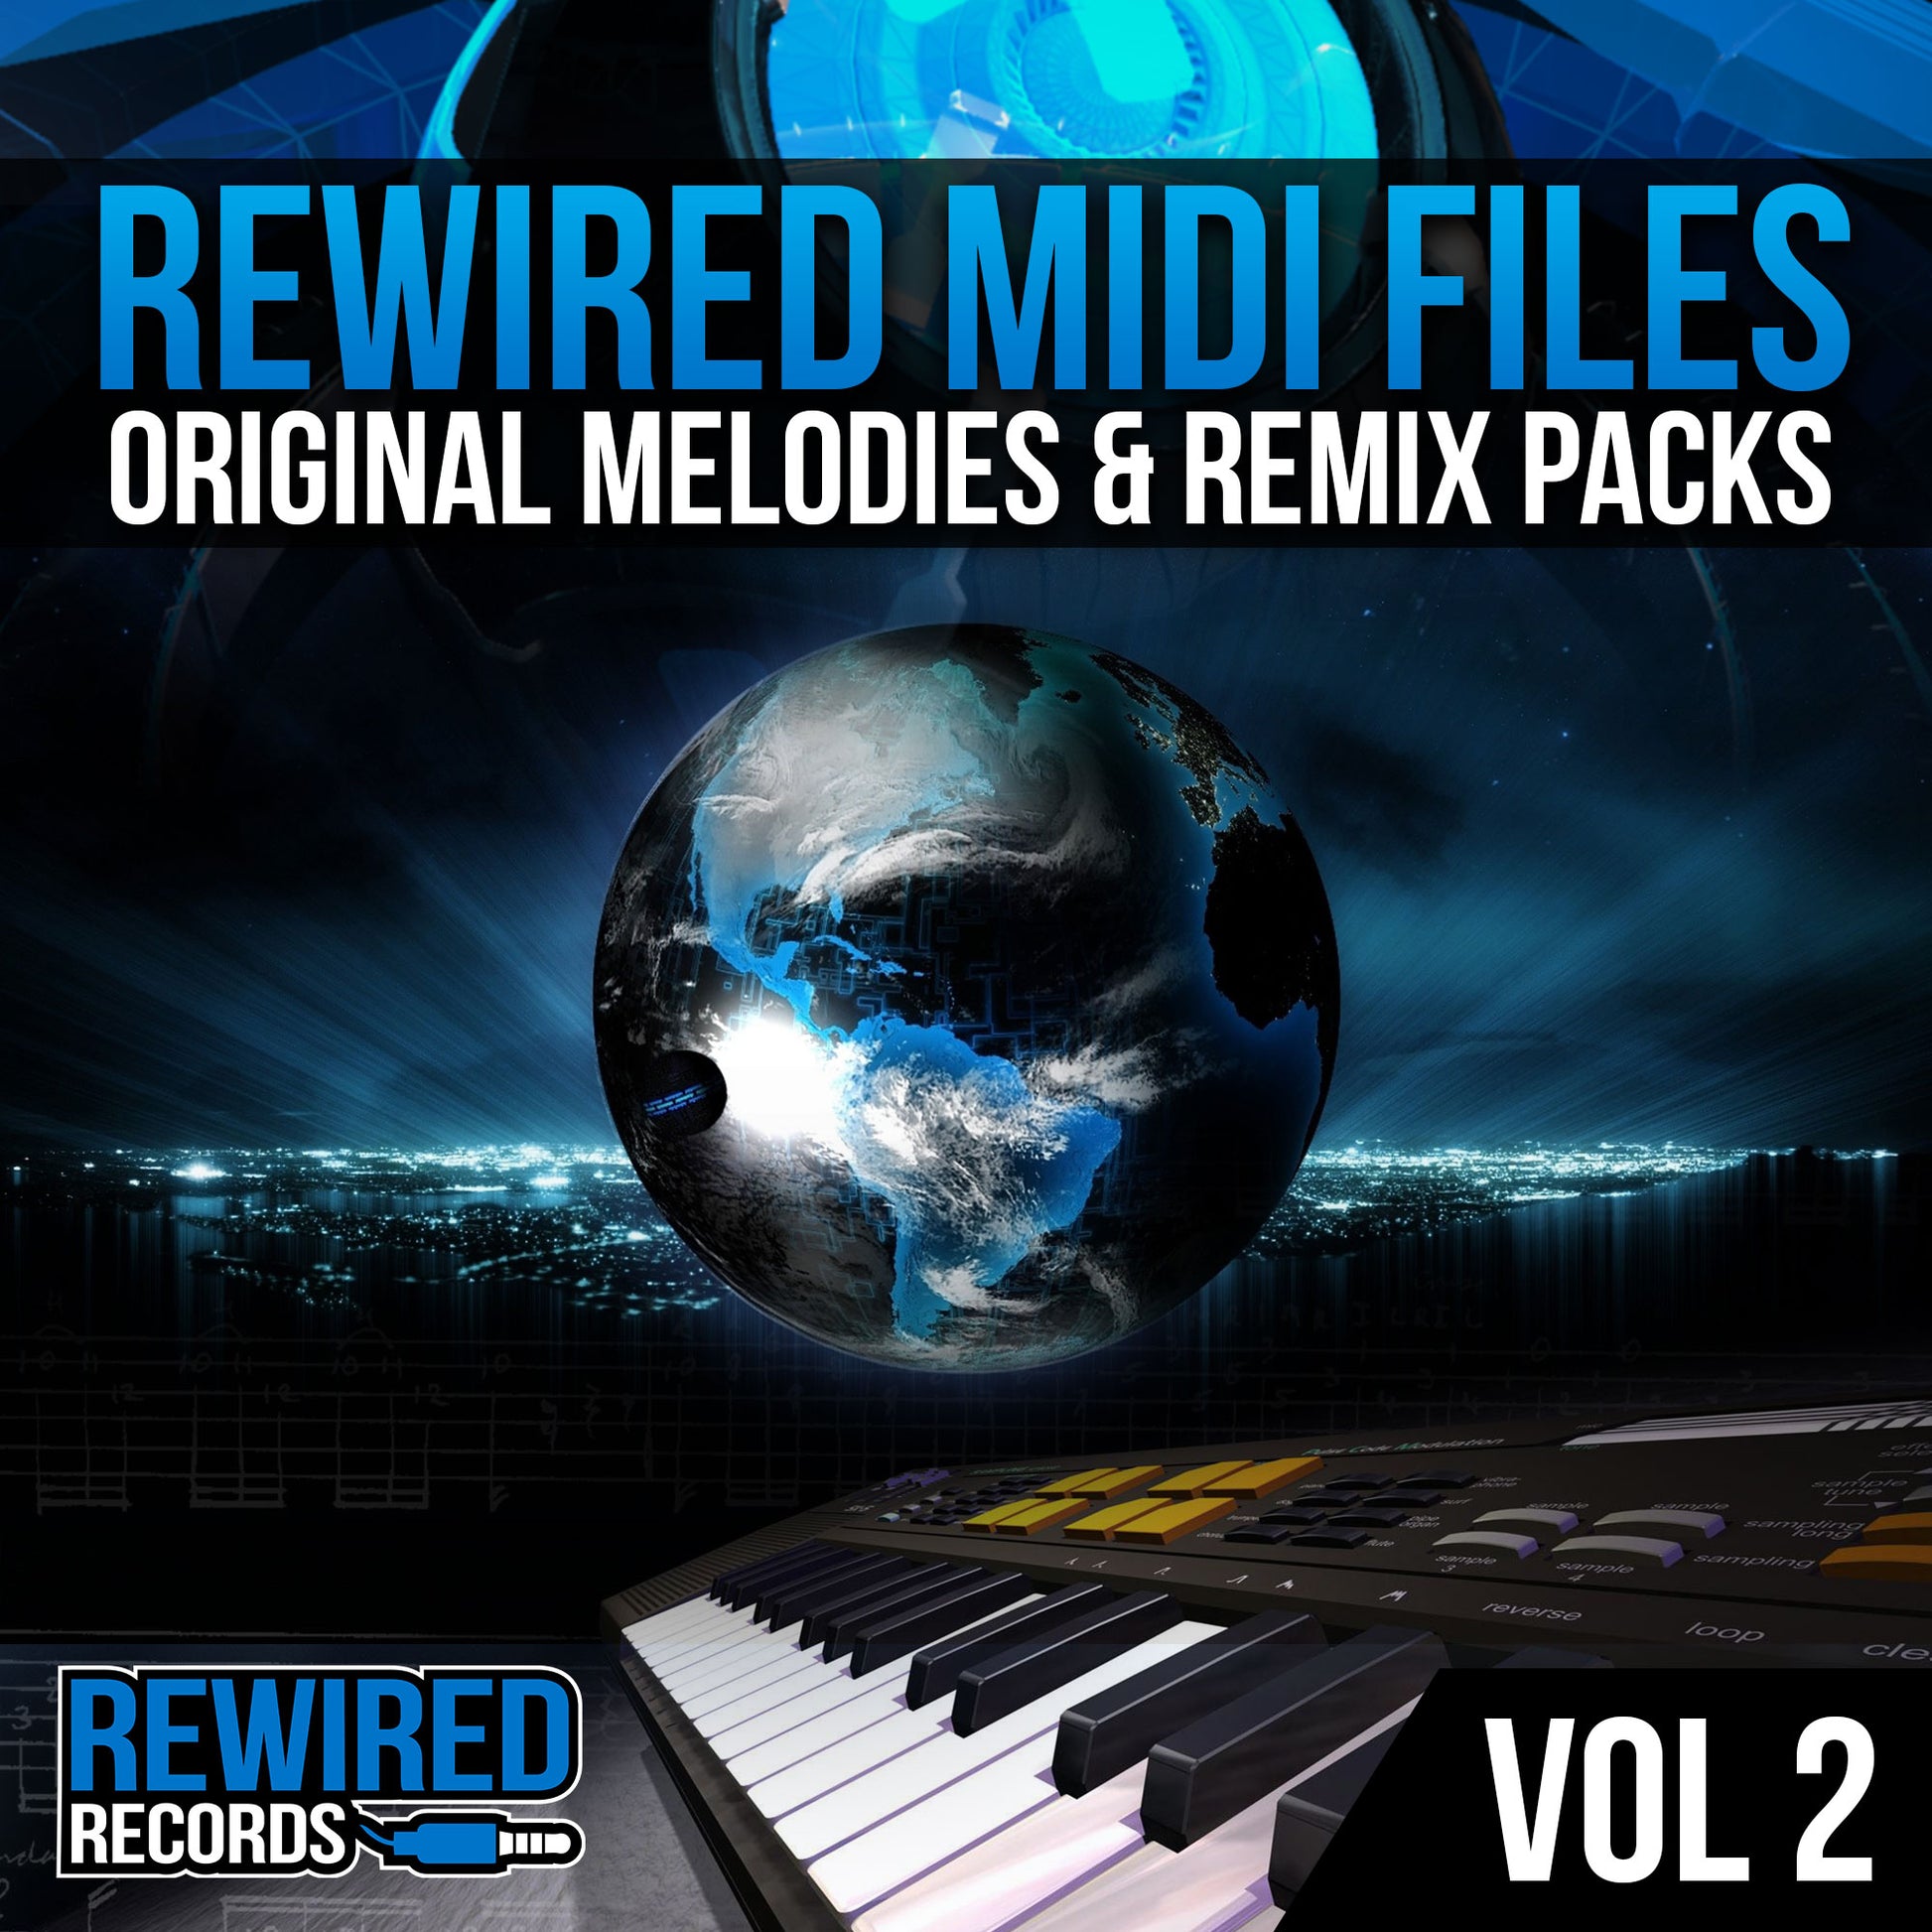 Rewired Midi Files Vol 2 - Rewired Records